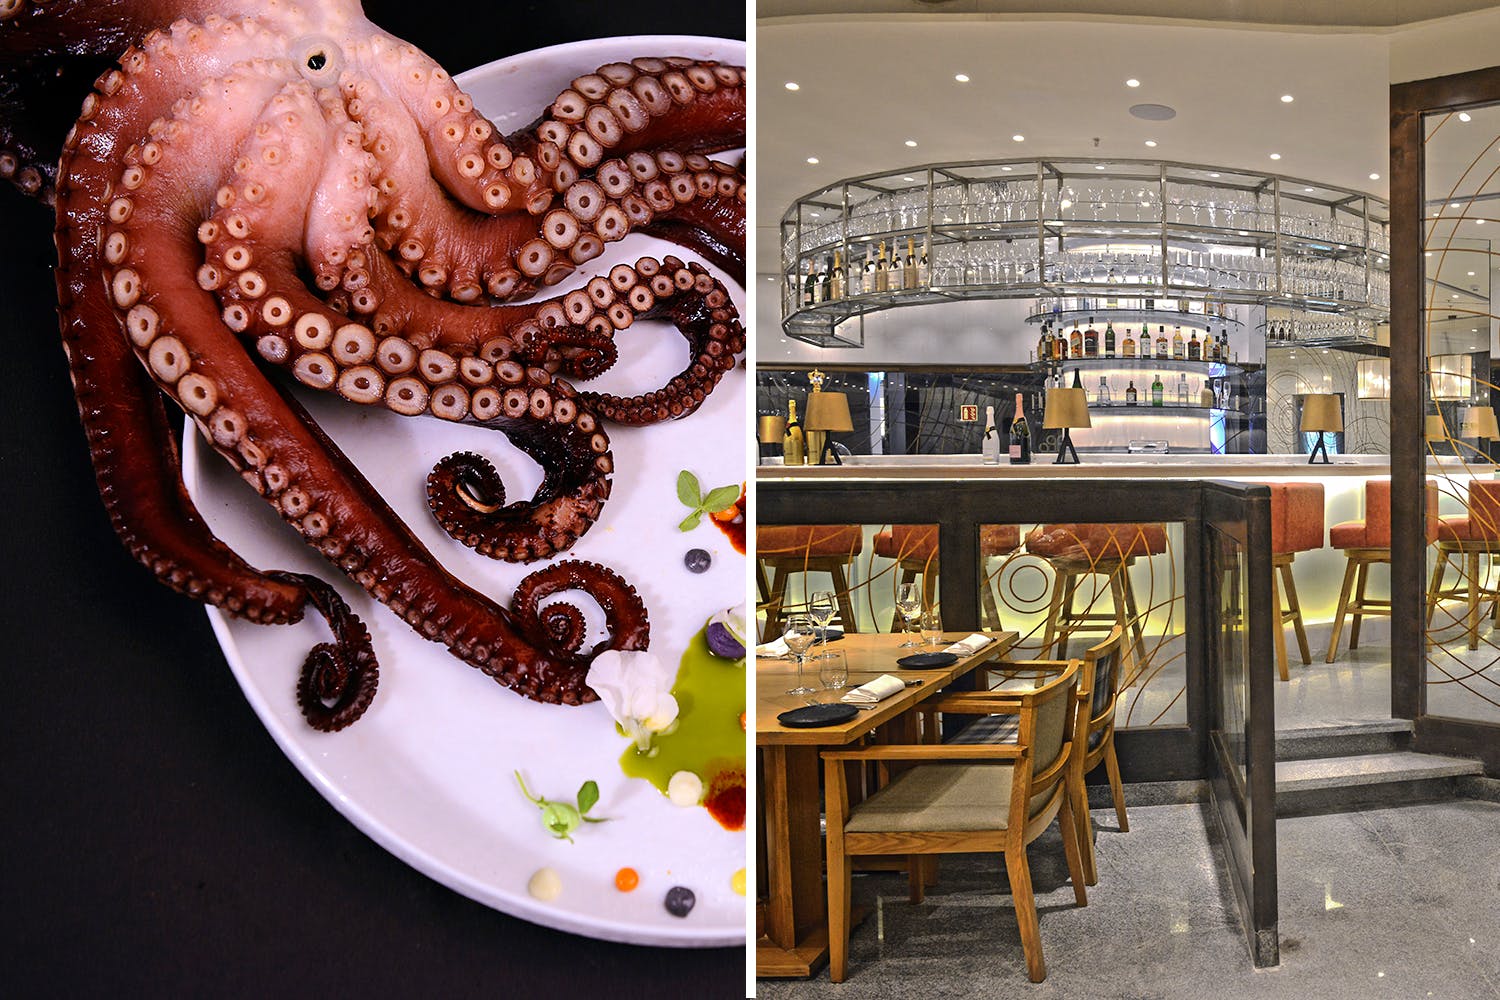 Octopus,Cephalopod,Organism,Marine invertebrates,giant pacific octopus,Interior design,Metal